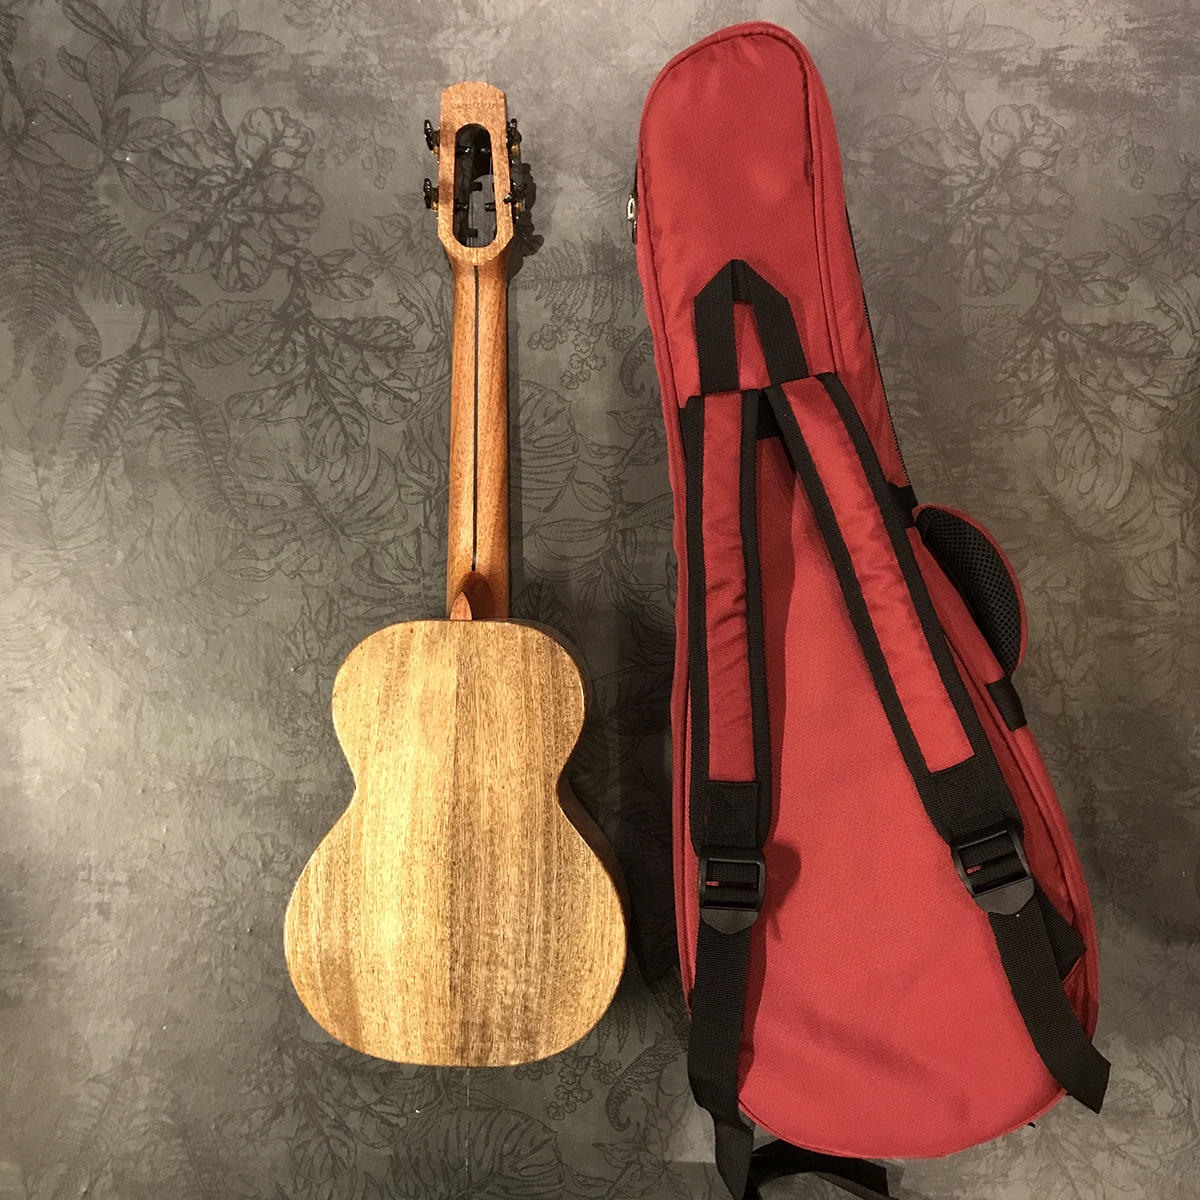 Fireball Tenor ukulele